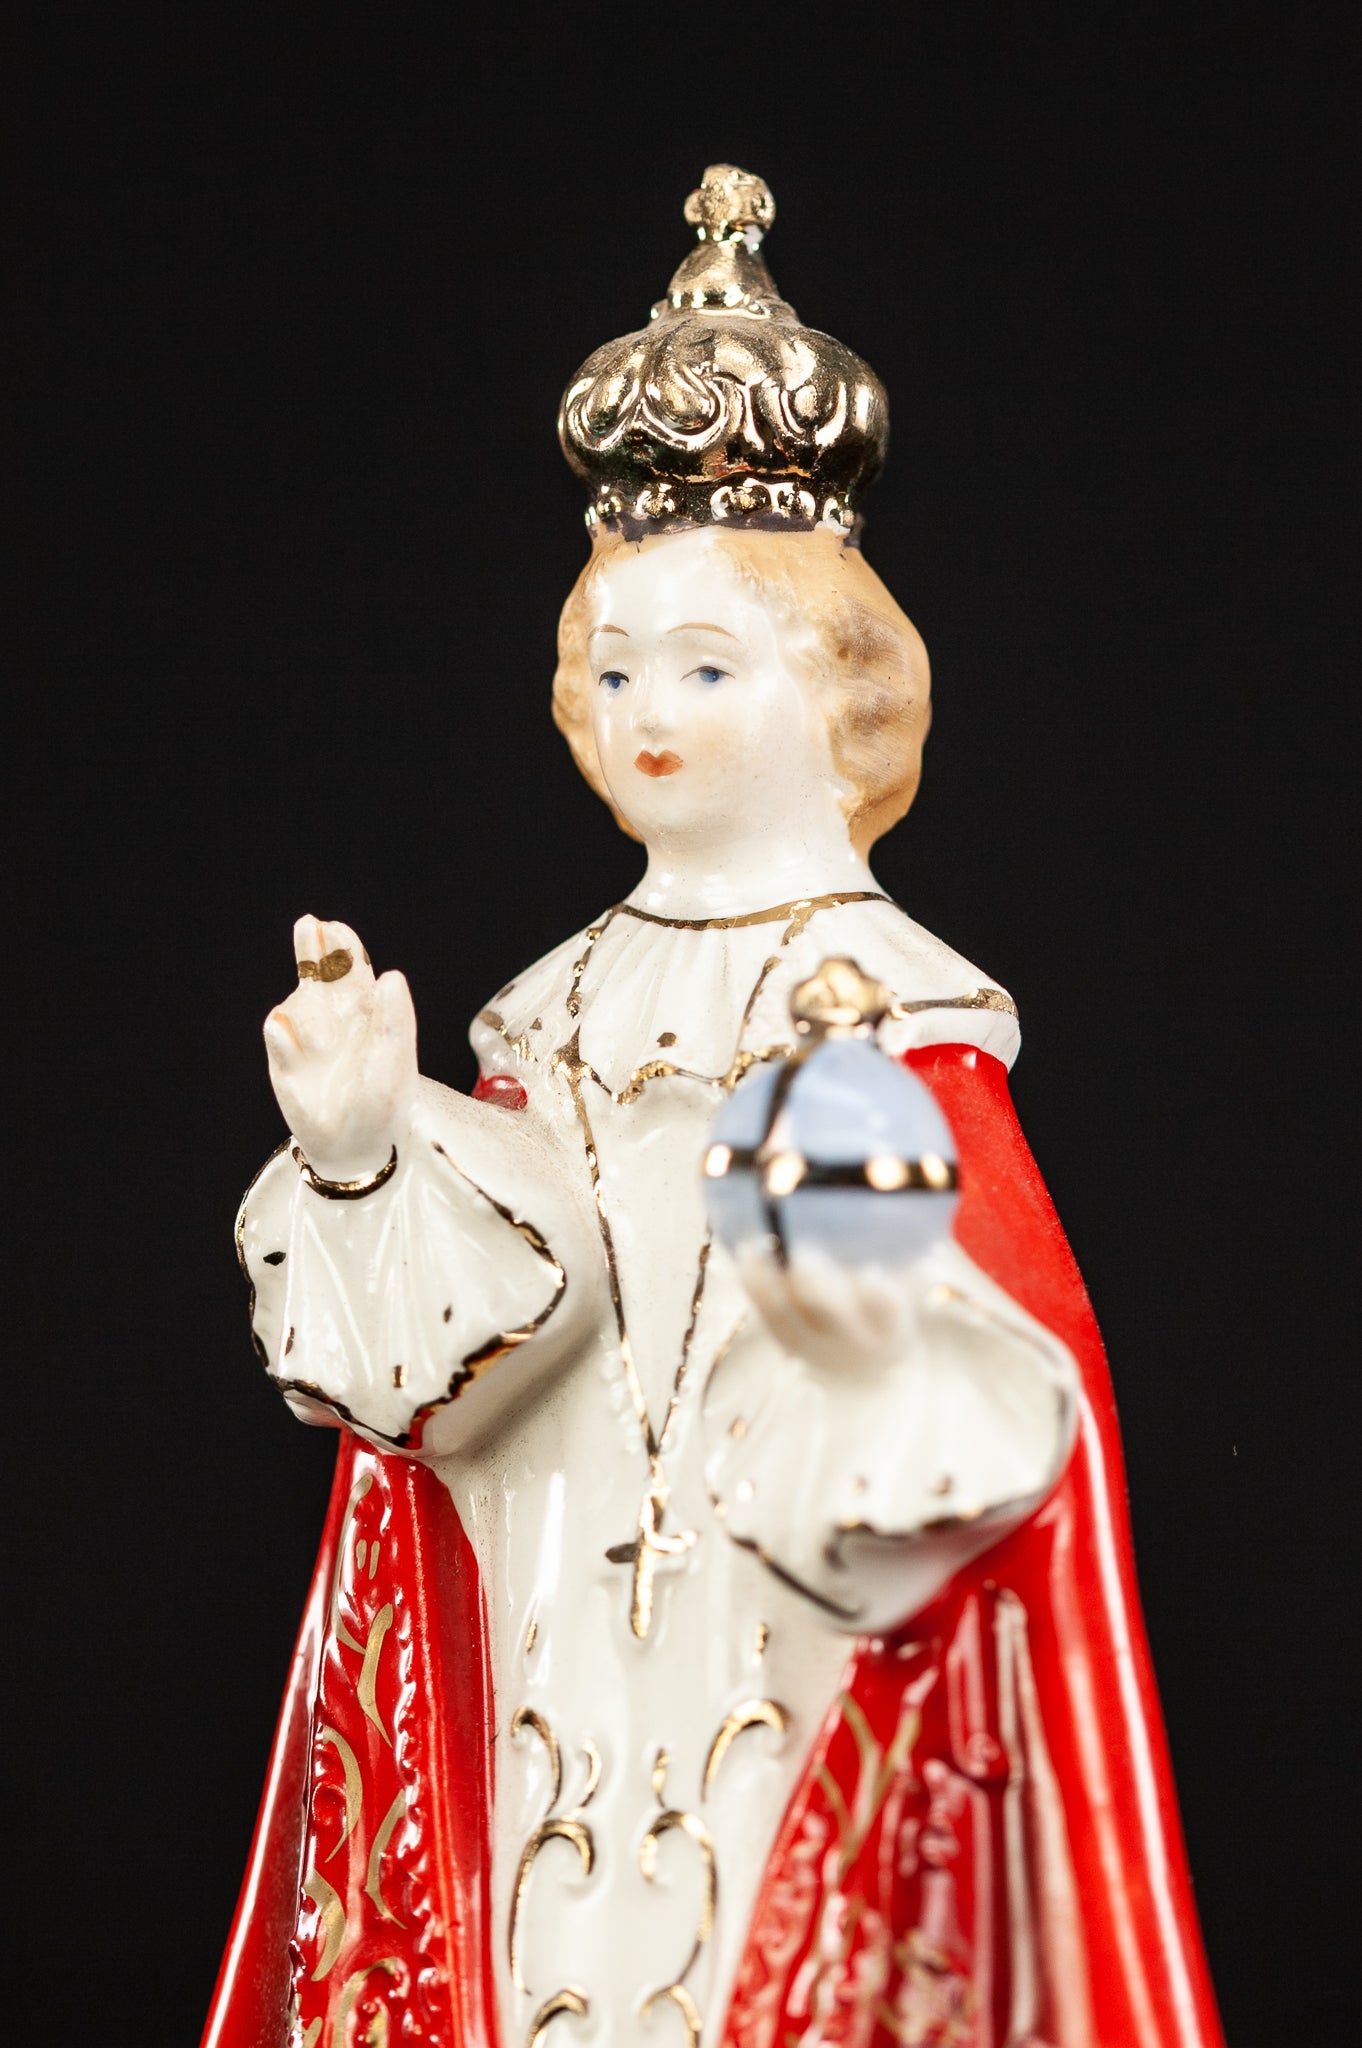 Infant Jesus of Prague Porcelain Statue